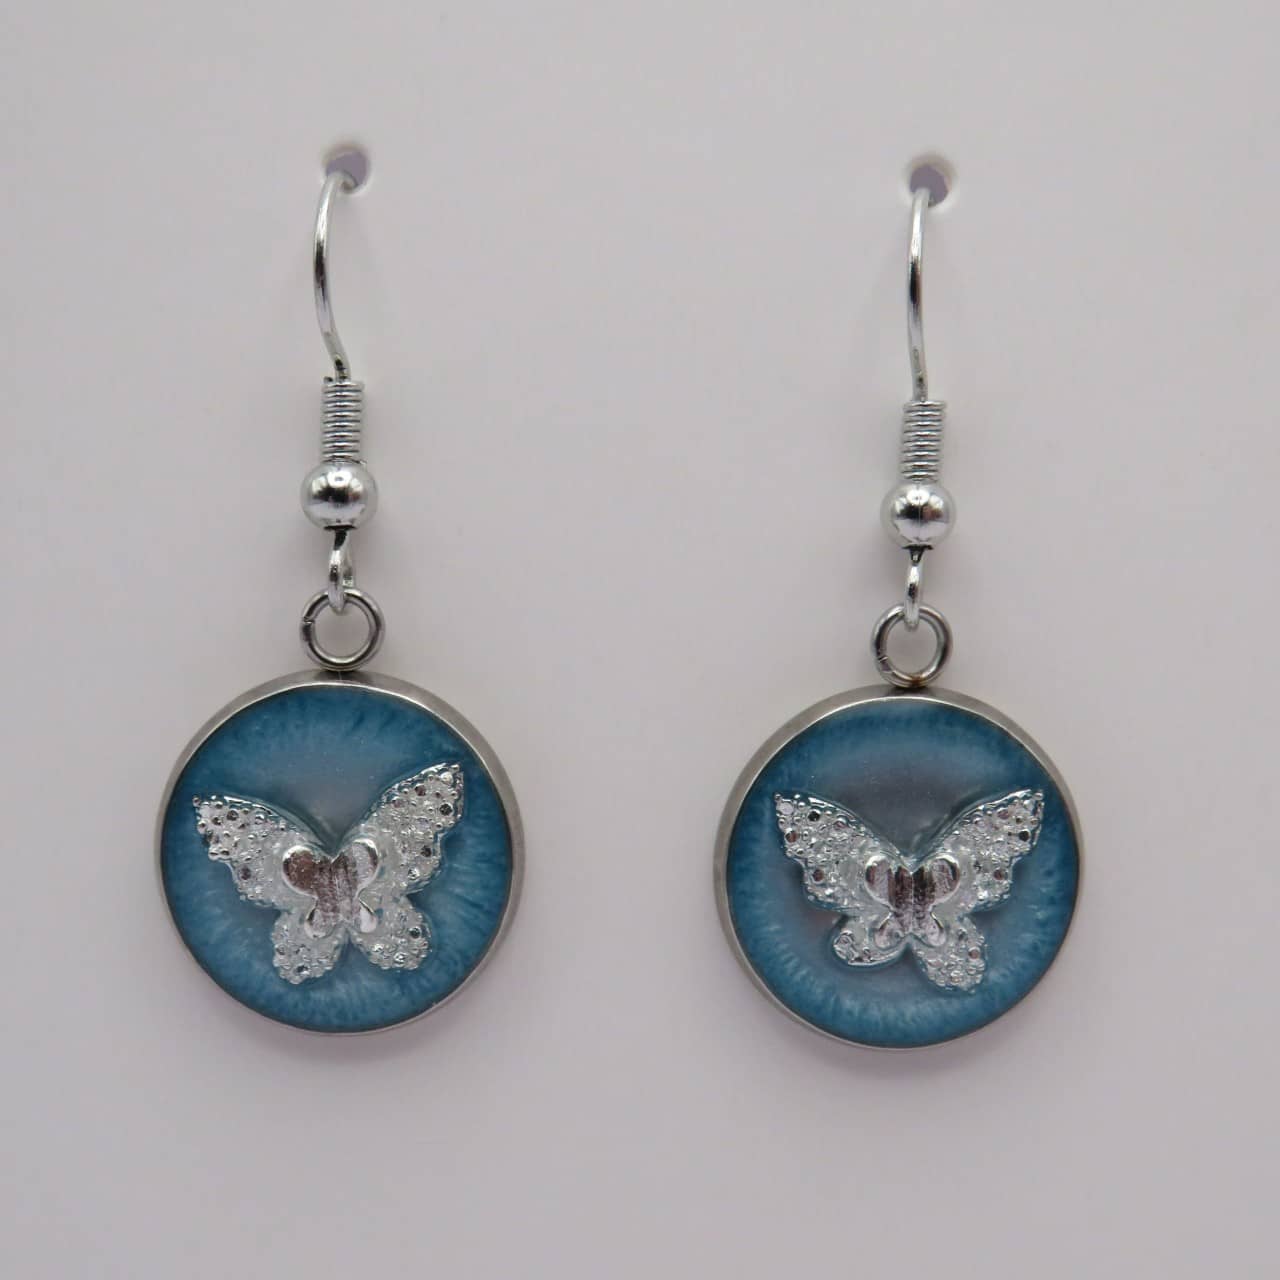 Stainless steel blue butterfly earrings